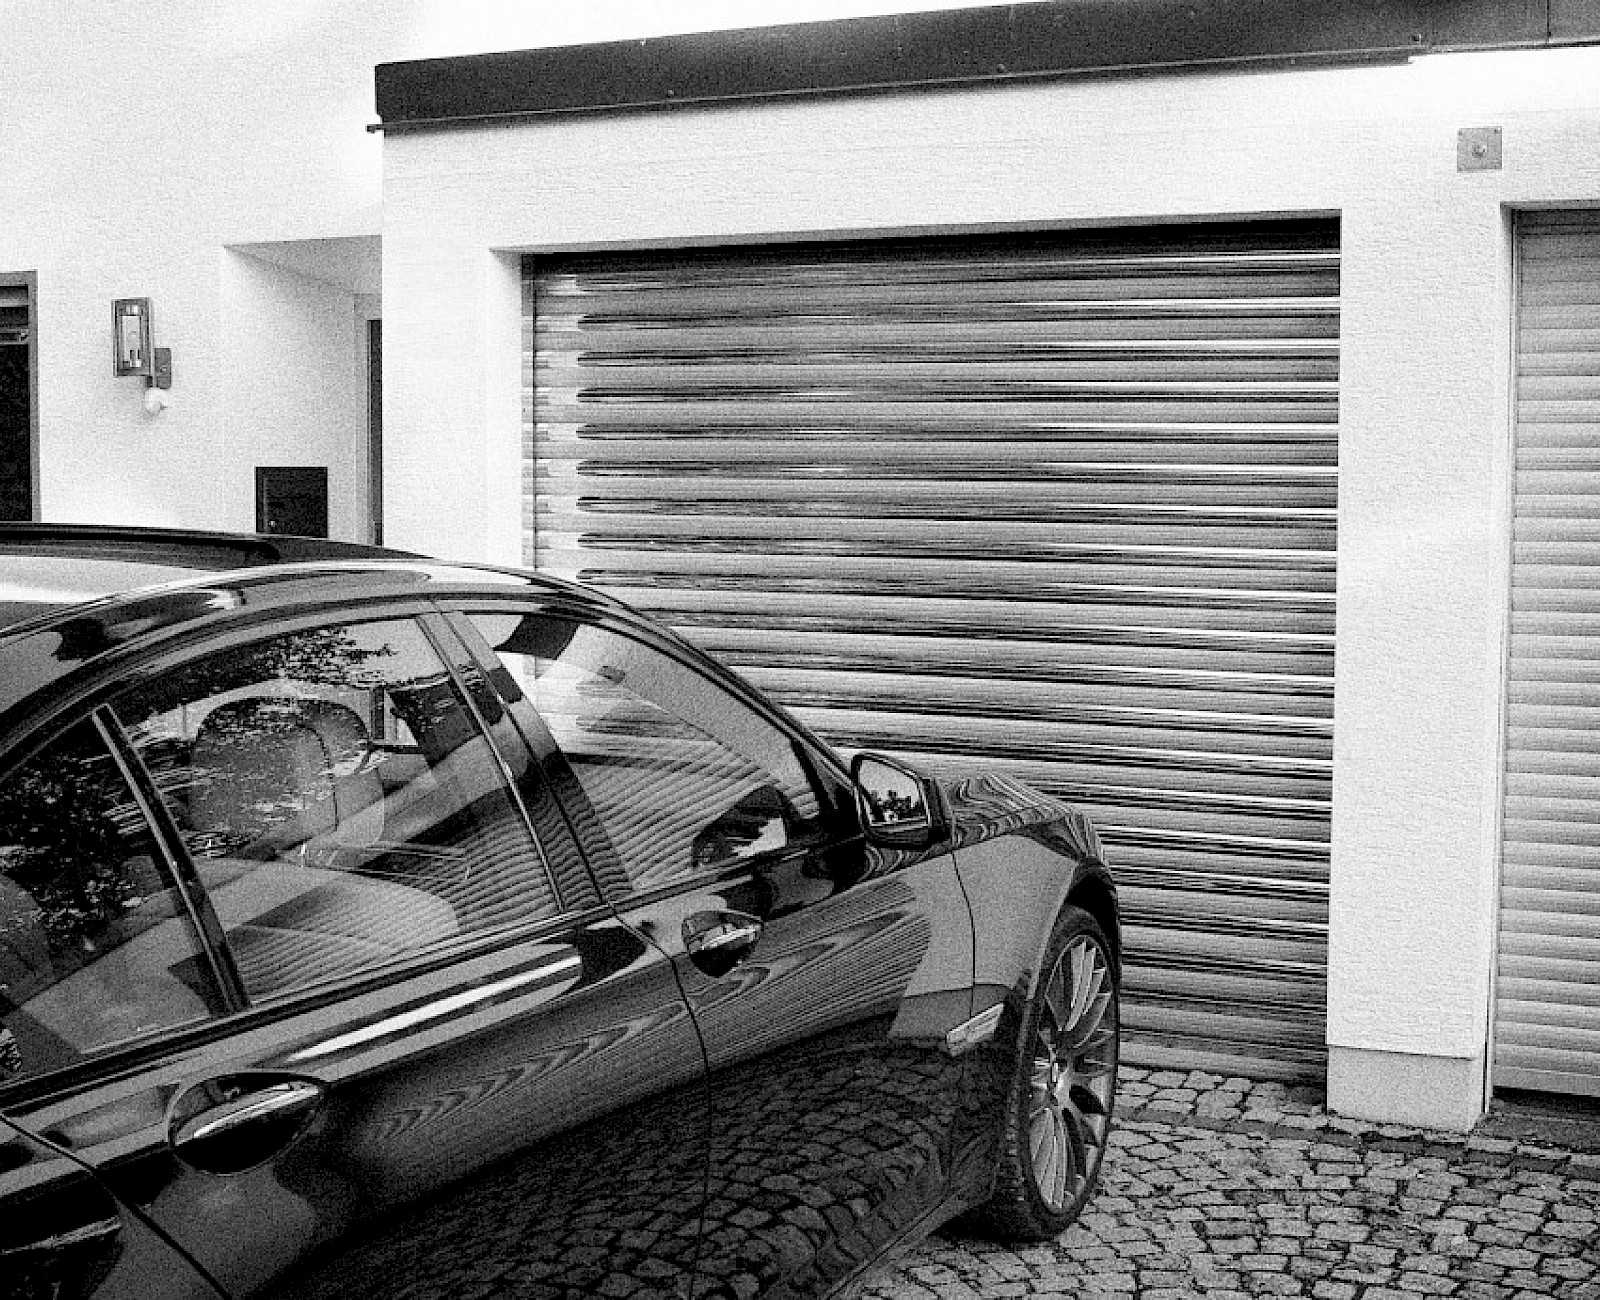 Heydebreck roller shutter/garage door gallery image